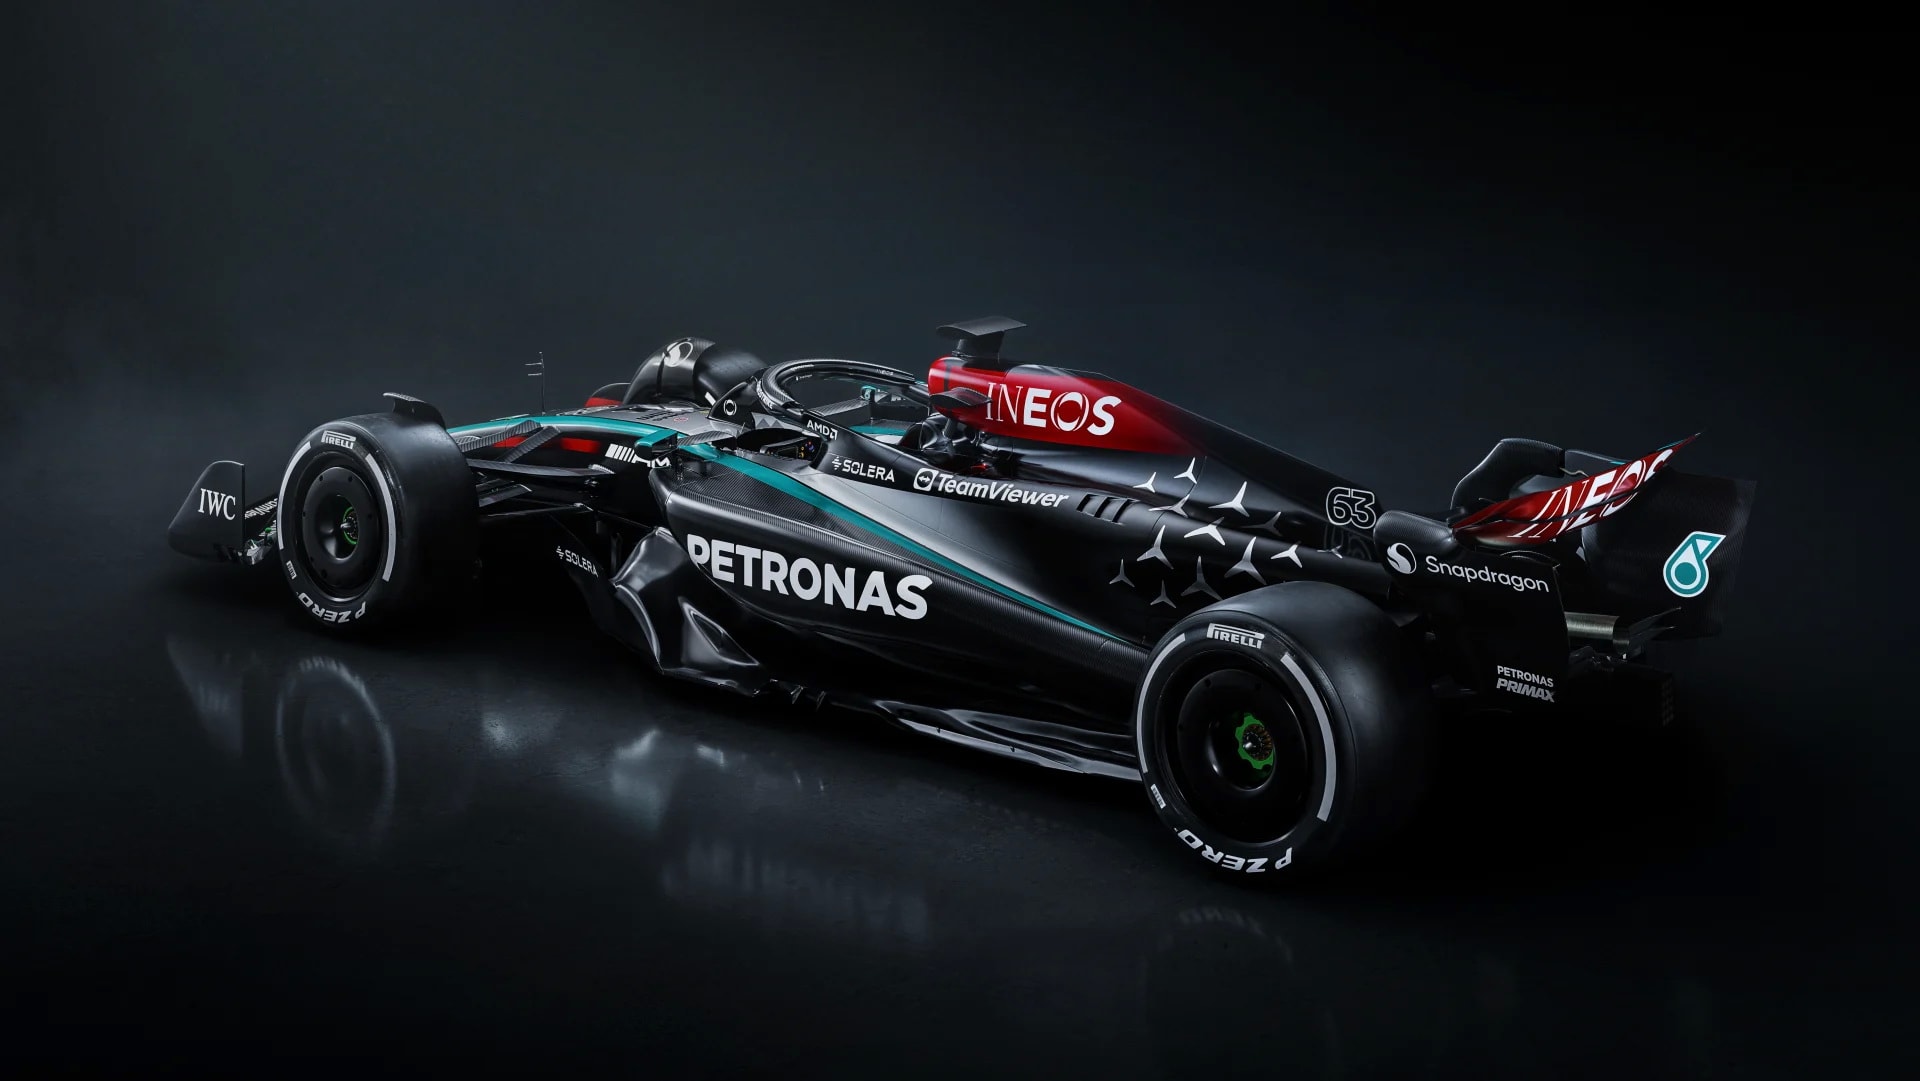 Mercedes-AMG представляет болид Формулы-1 W15, двухцветный, серебристо-черный, как чемпион